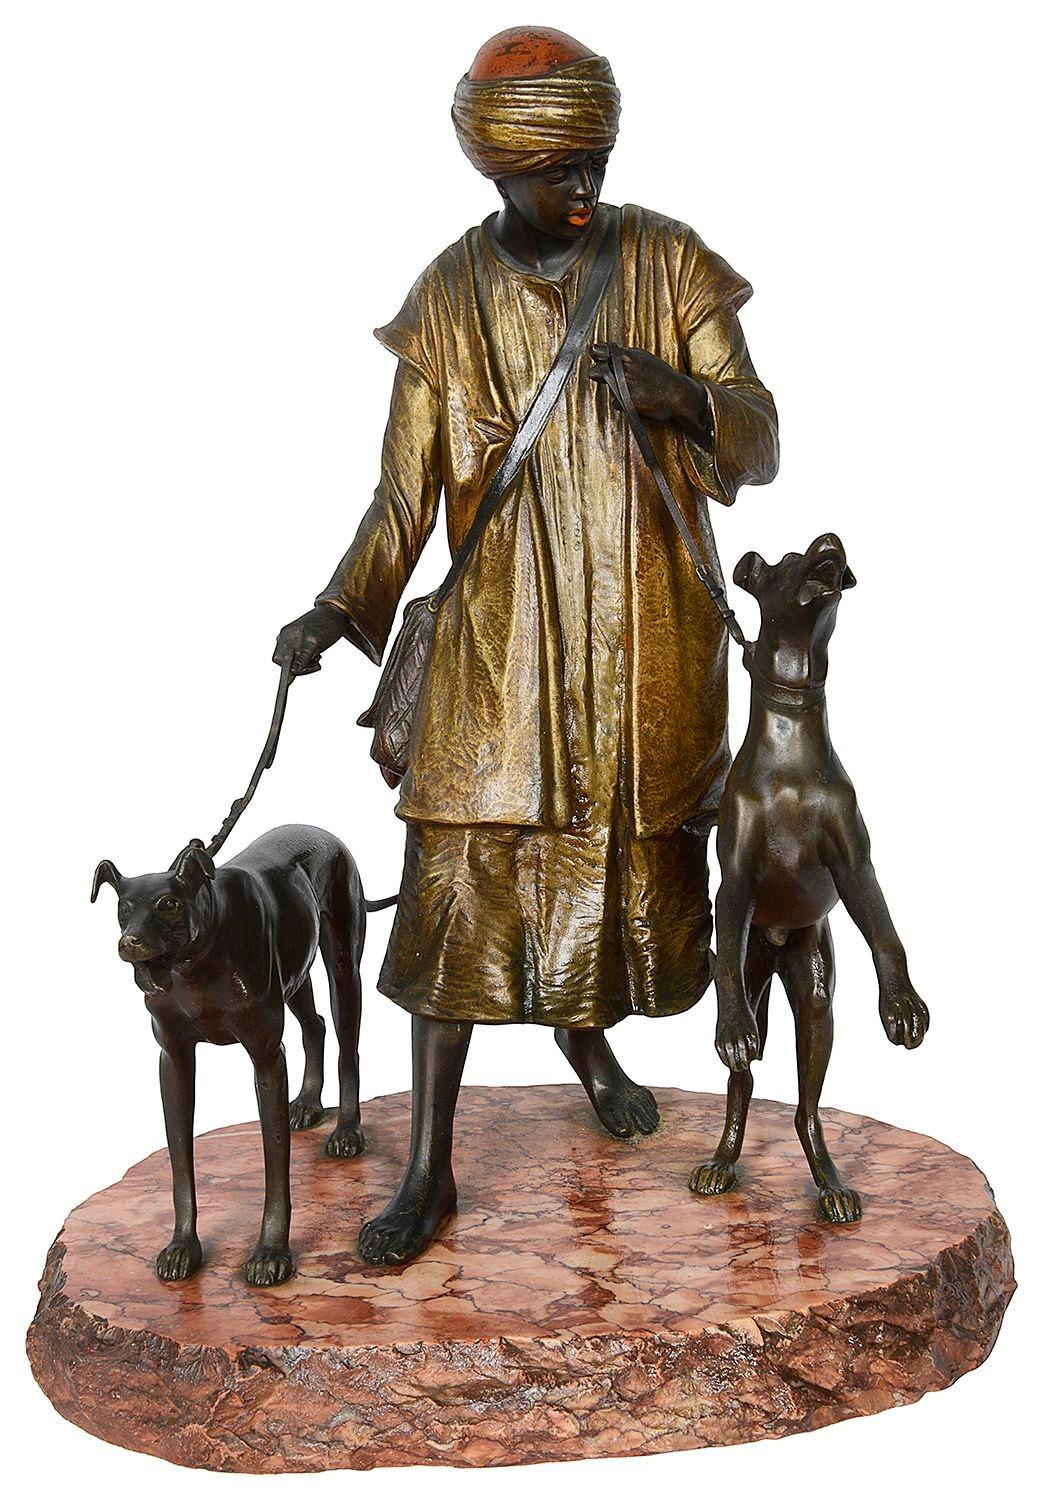 Cette magnifique statue en bronze de la fin du XIXe siècle, peinte à froid, représente un chien de chasse arabe, monté sur une base en marbre rouge, à la manière de Franz Bergman.
Franz Xaver Bergman (ou Bergmann) était le célèbre propriétaire d'une